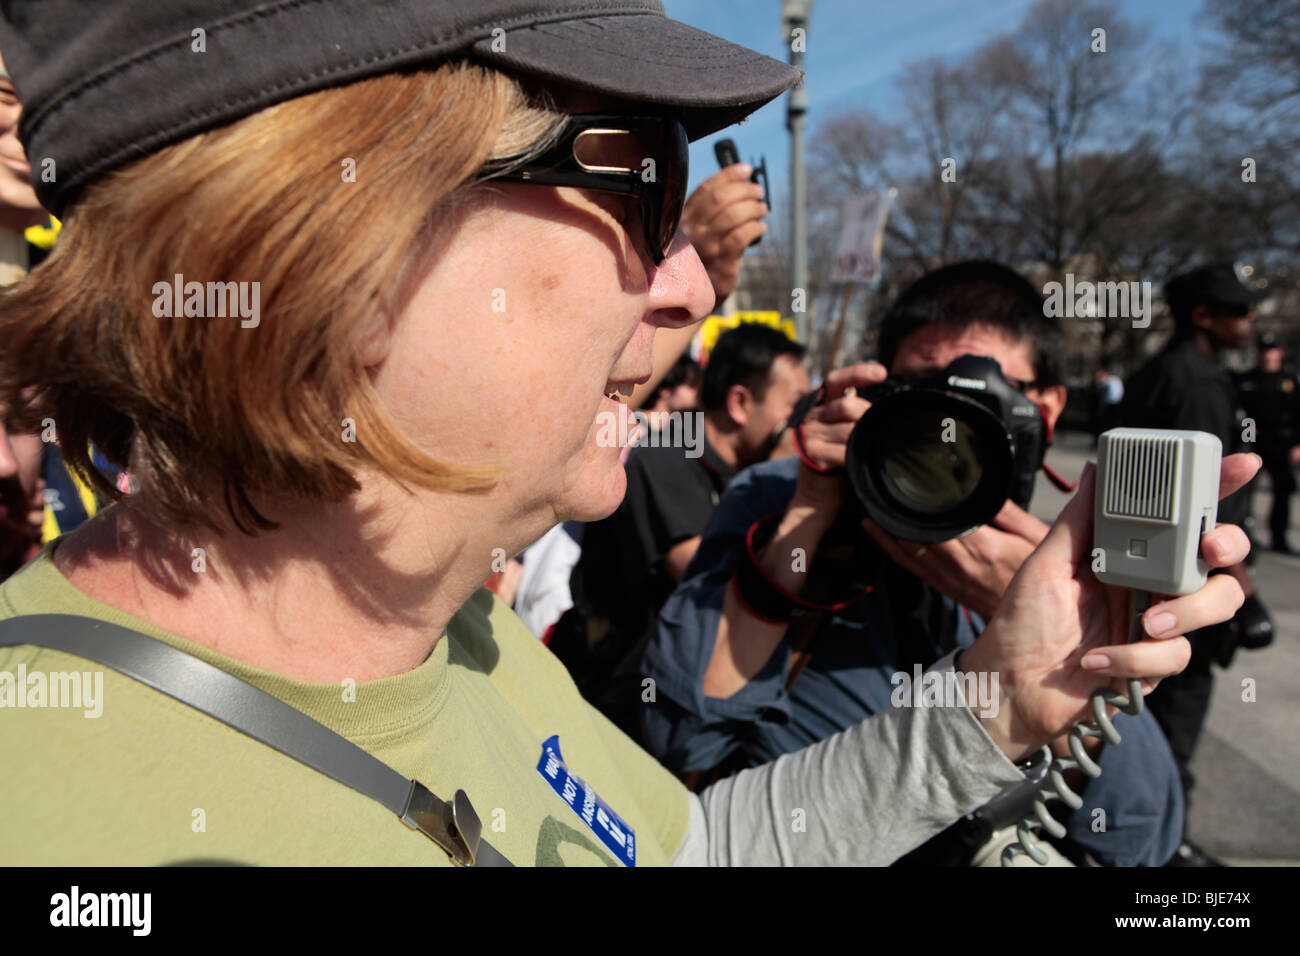 Cindy Sheehan proesting à White House juste avant d'être arrêté. Manifestation anti-guerre. Marche sur Washington. 20 mars, 2010 Banque D'Images